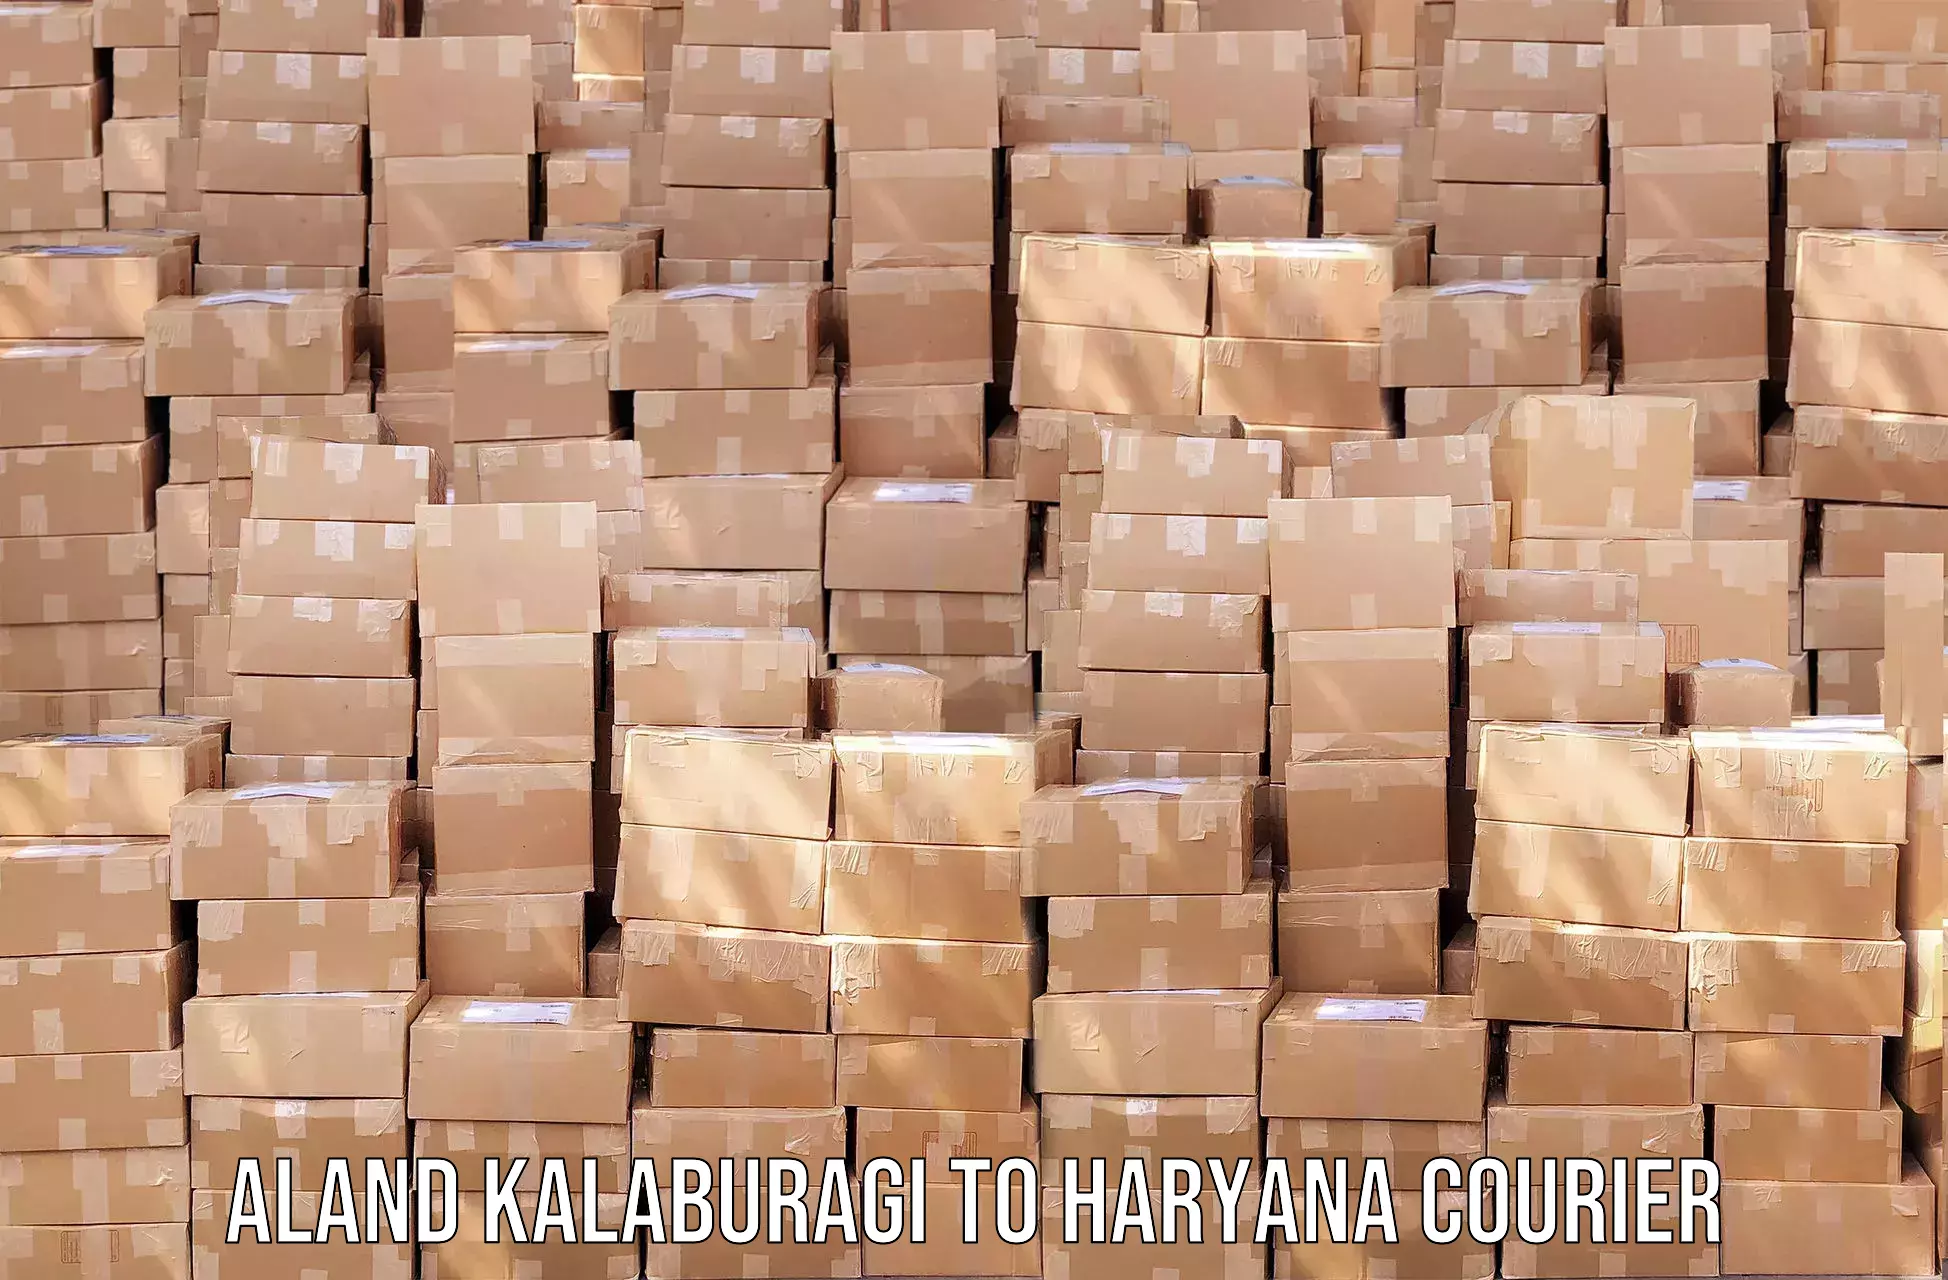 Speedy delivery service Aland Kalaburagi to Haryana